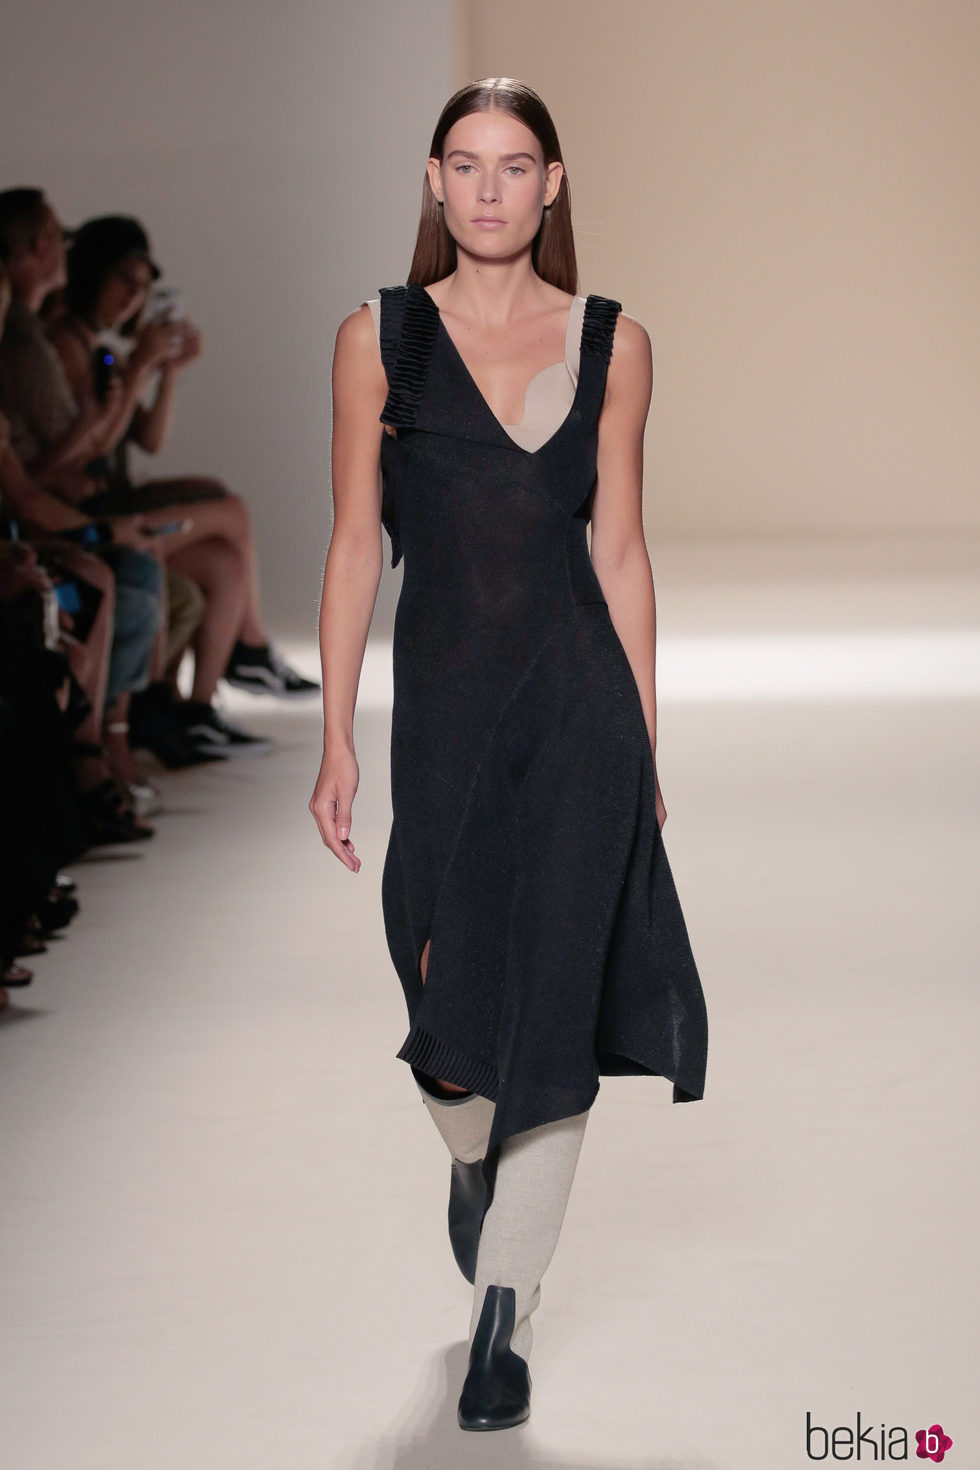 Vestido negro de la colección primavera/verano 2017 de Victoria Beckham en Nueva York Fashion Week